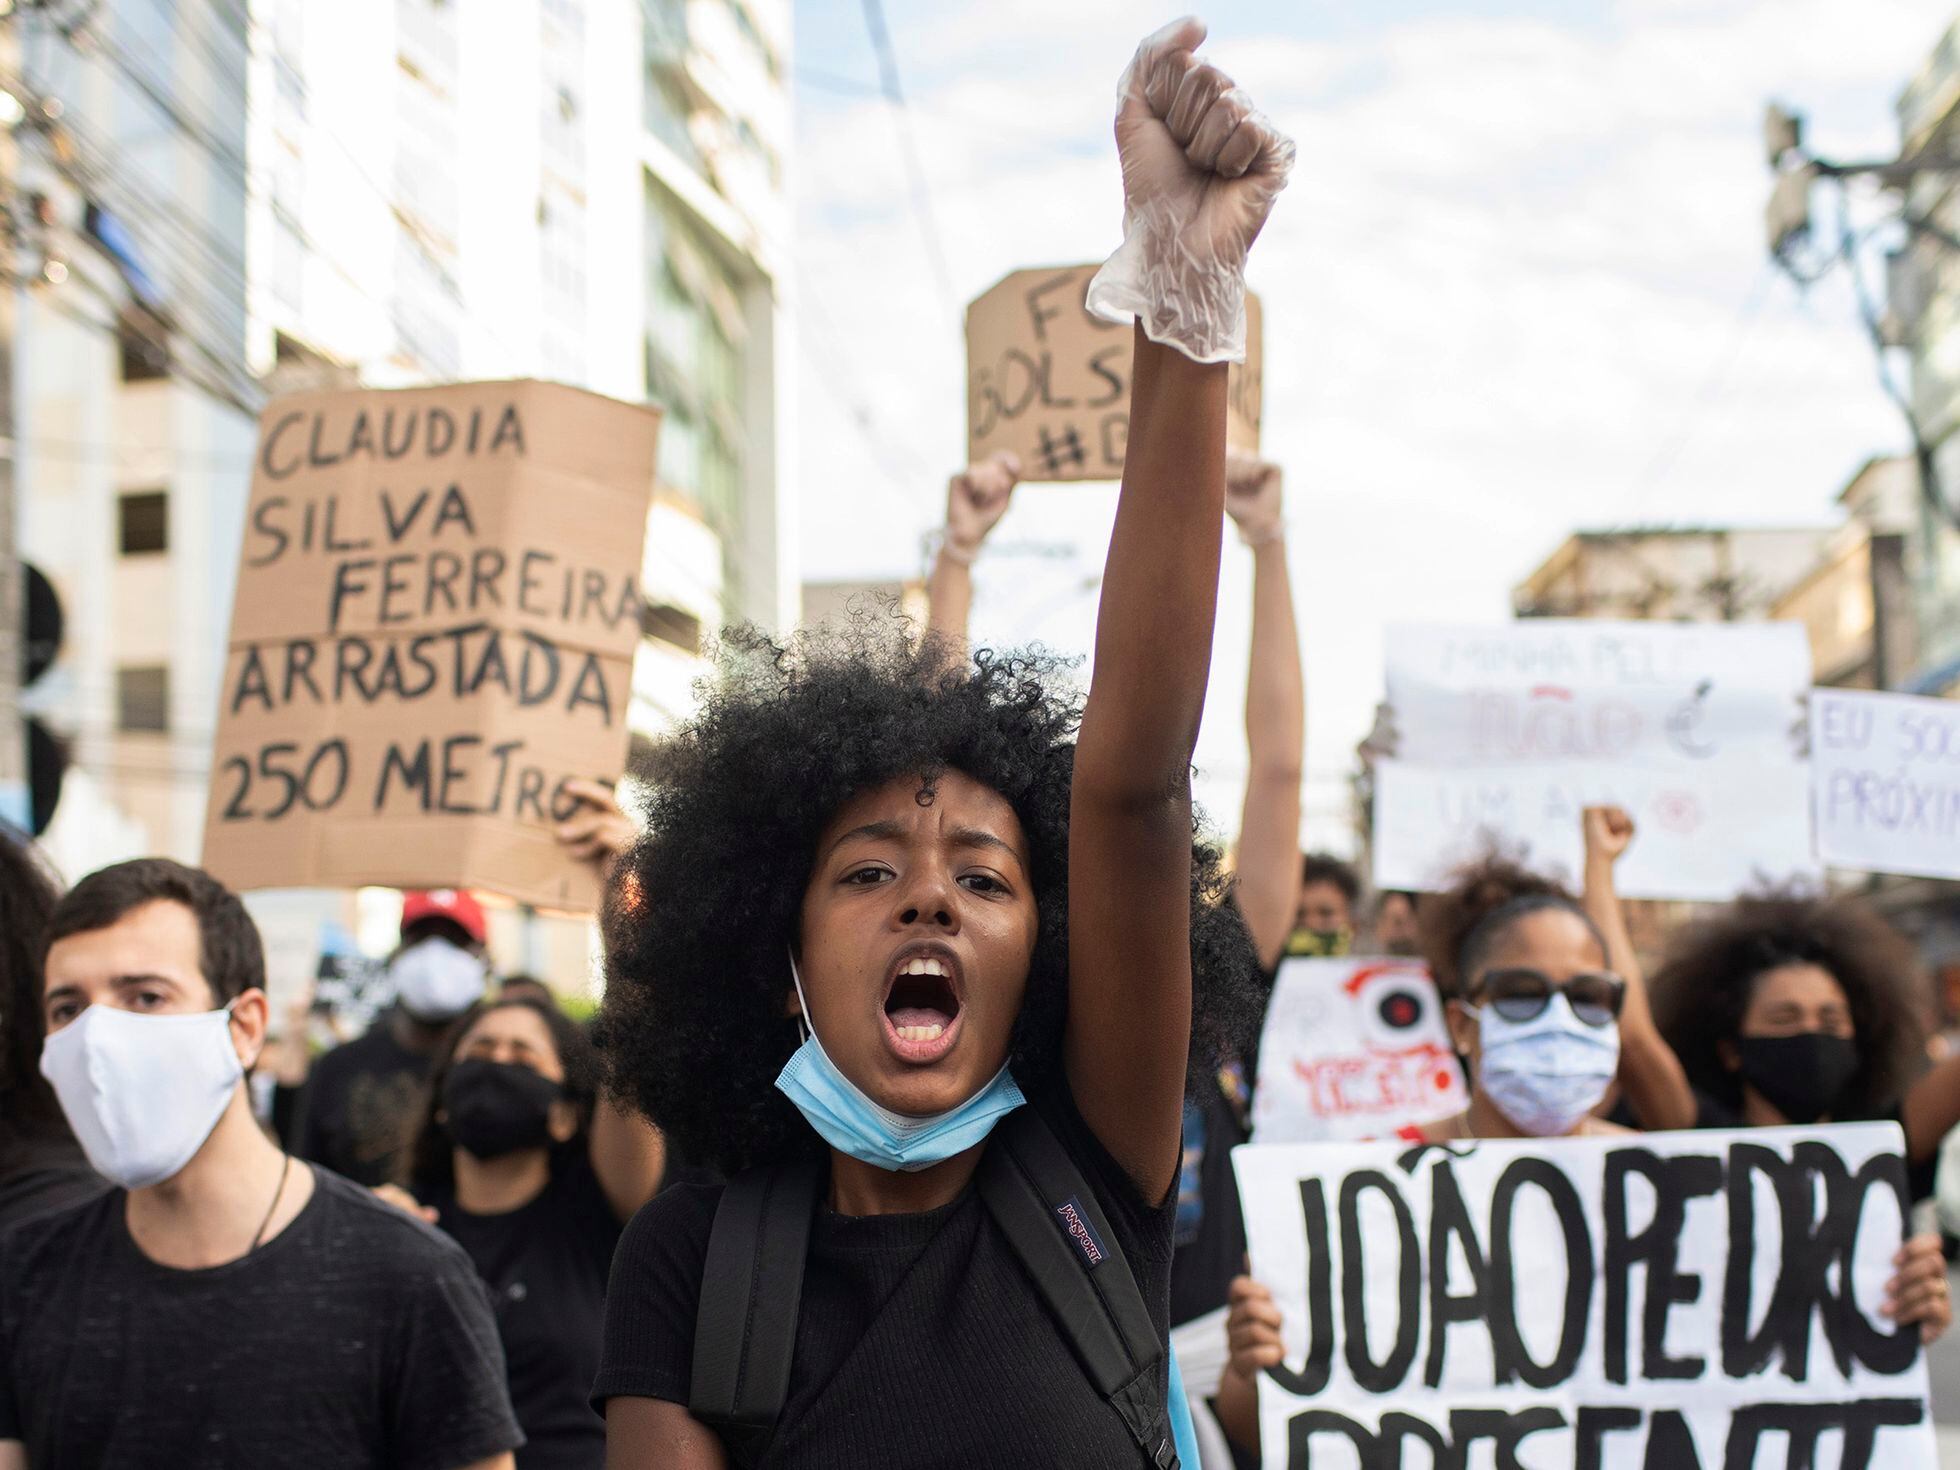 Preconceito: Mito da democracia racial só fez mal ao negro no Brasil -  05/11/2015 - UOL Notícias